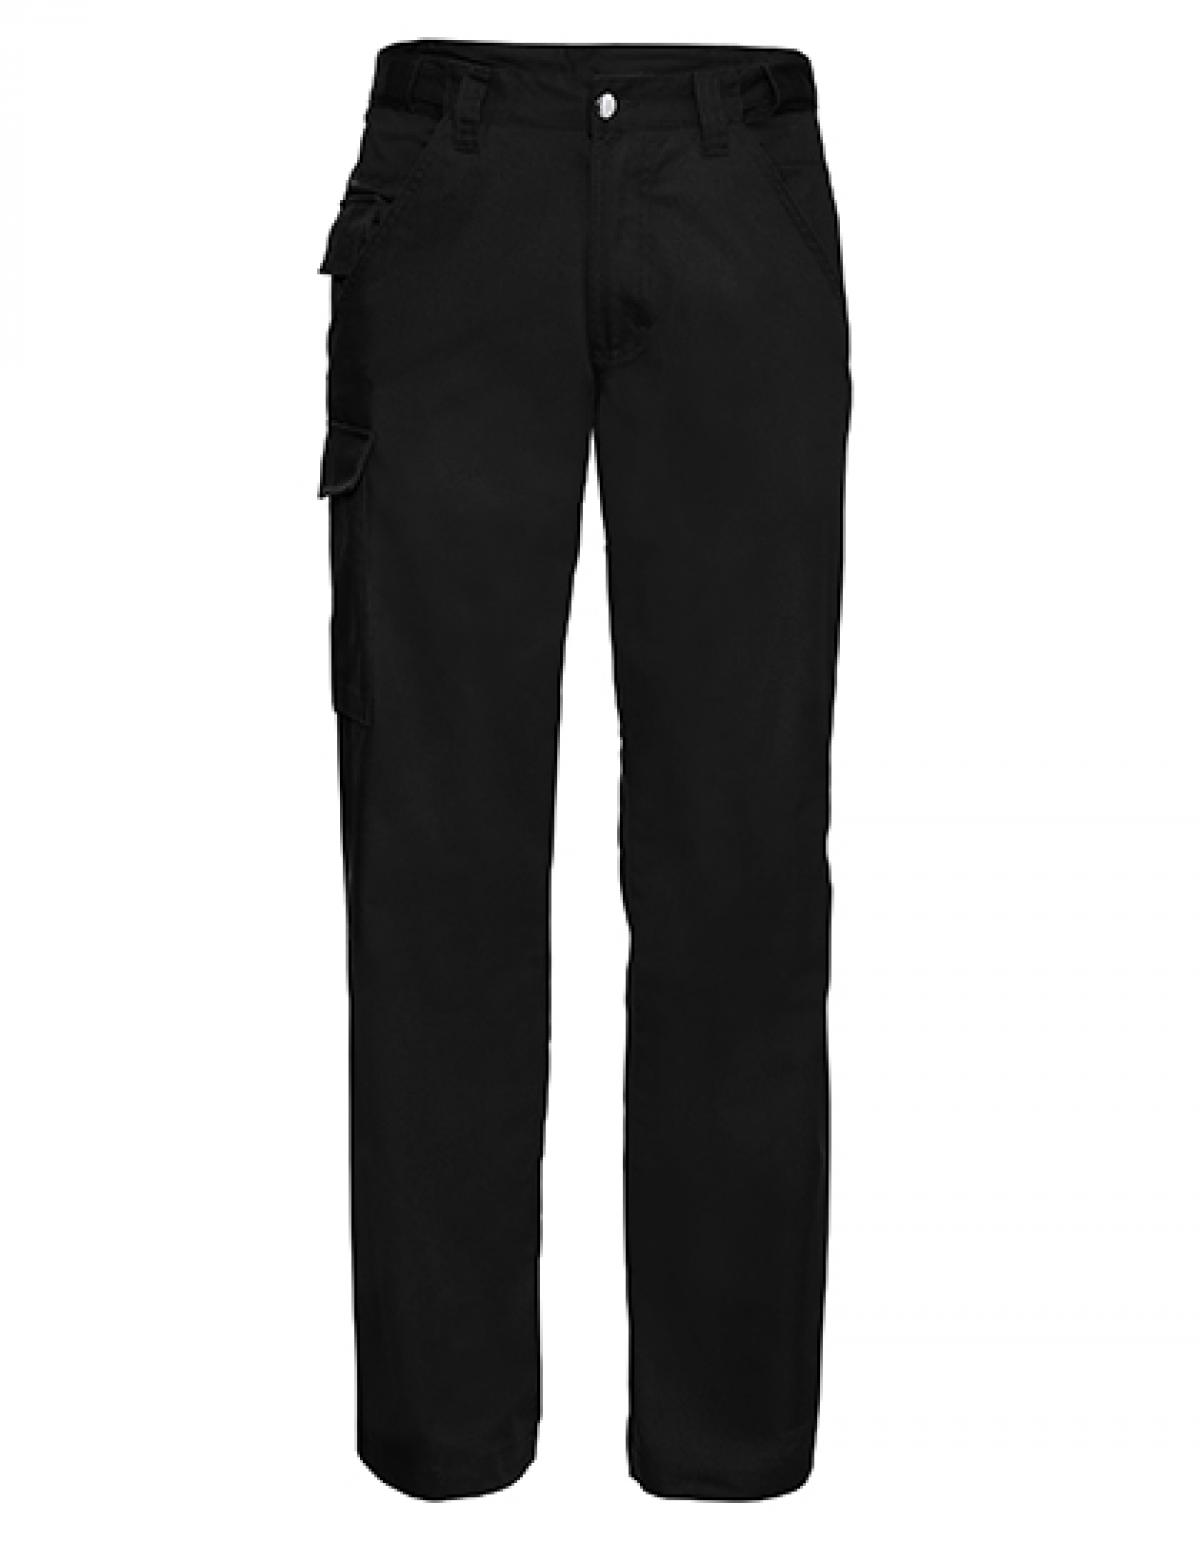 Indexbild 2 - Workwear-Hose aus Polyester-/Baumwoll-Twill | Russell